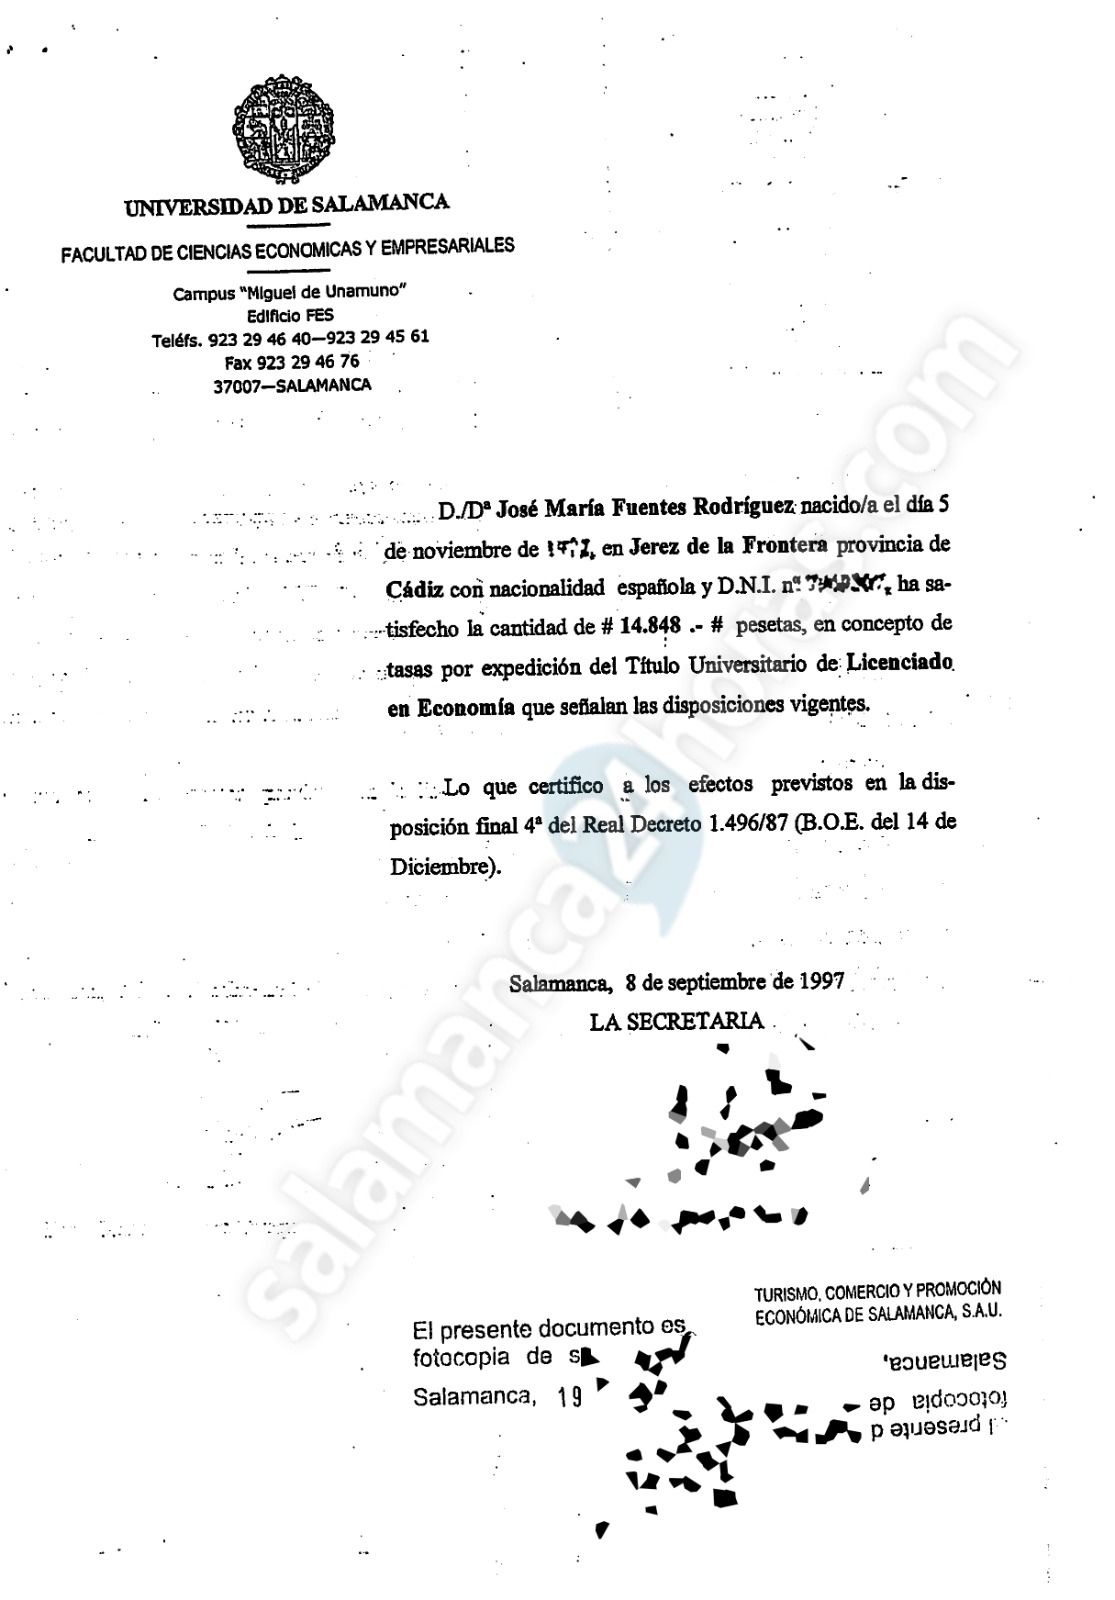 Informe falsificado presentado como notas de José María Fuentes 2